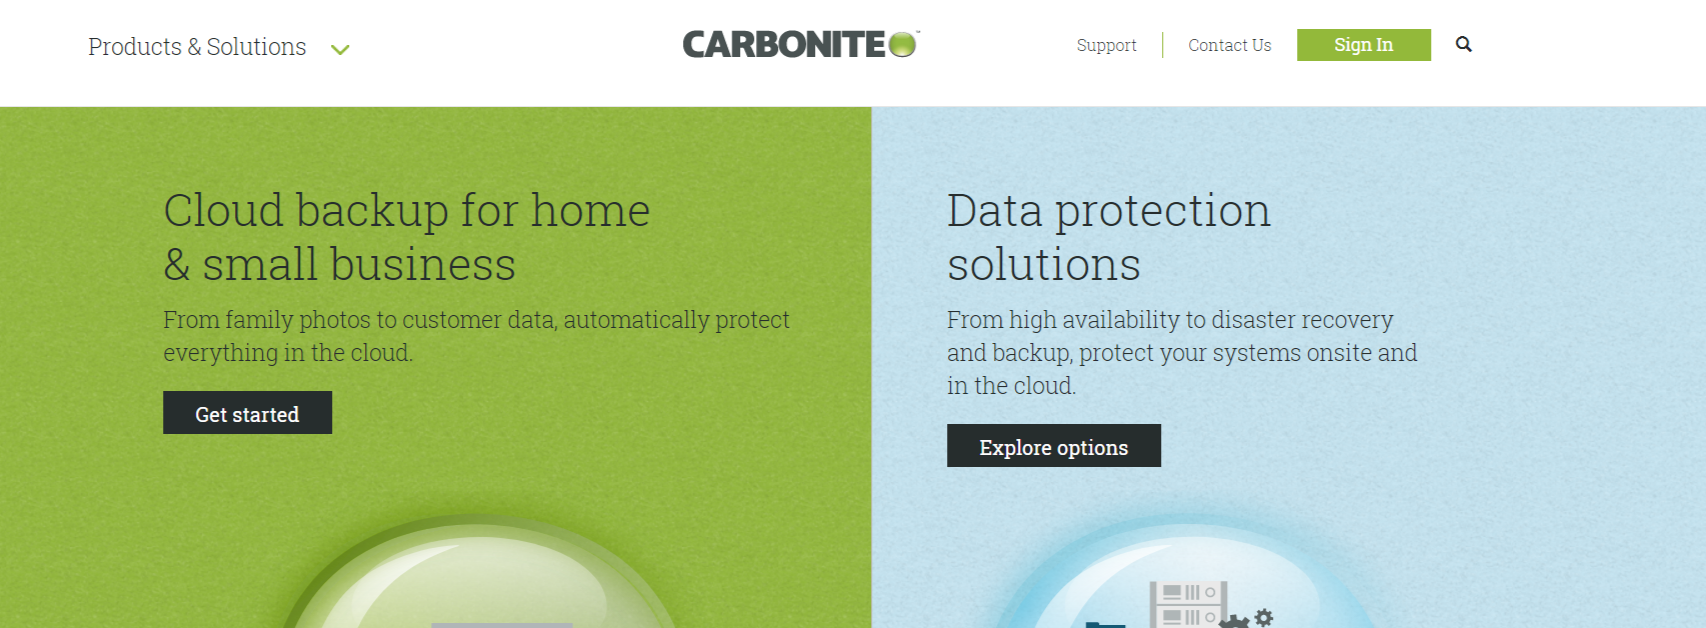 Carbonite - Meilleur service de sauvegarde cloud pour Mac